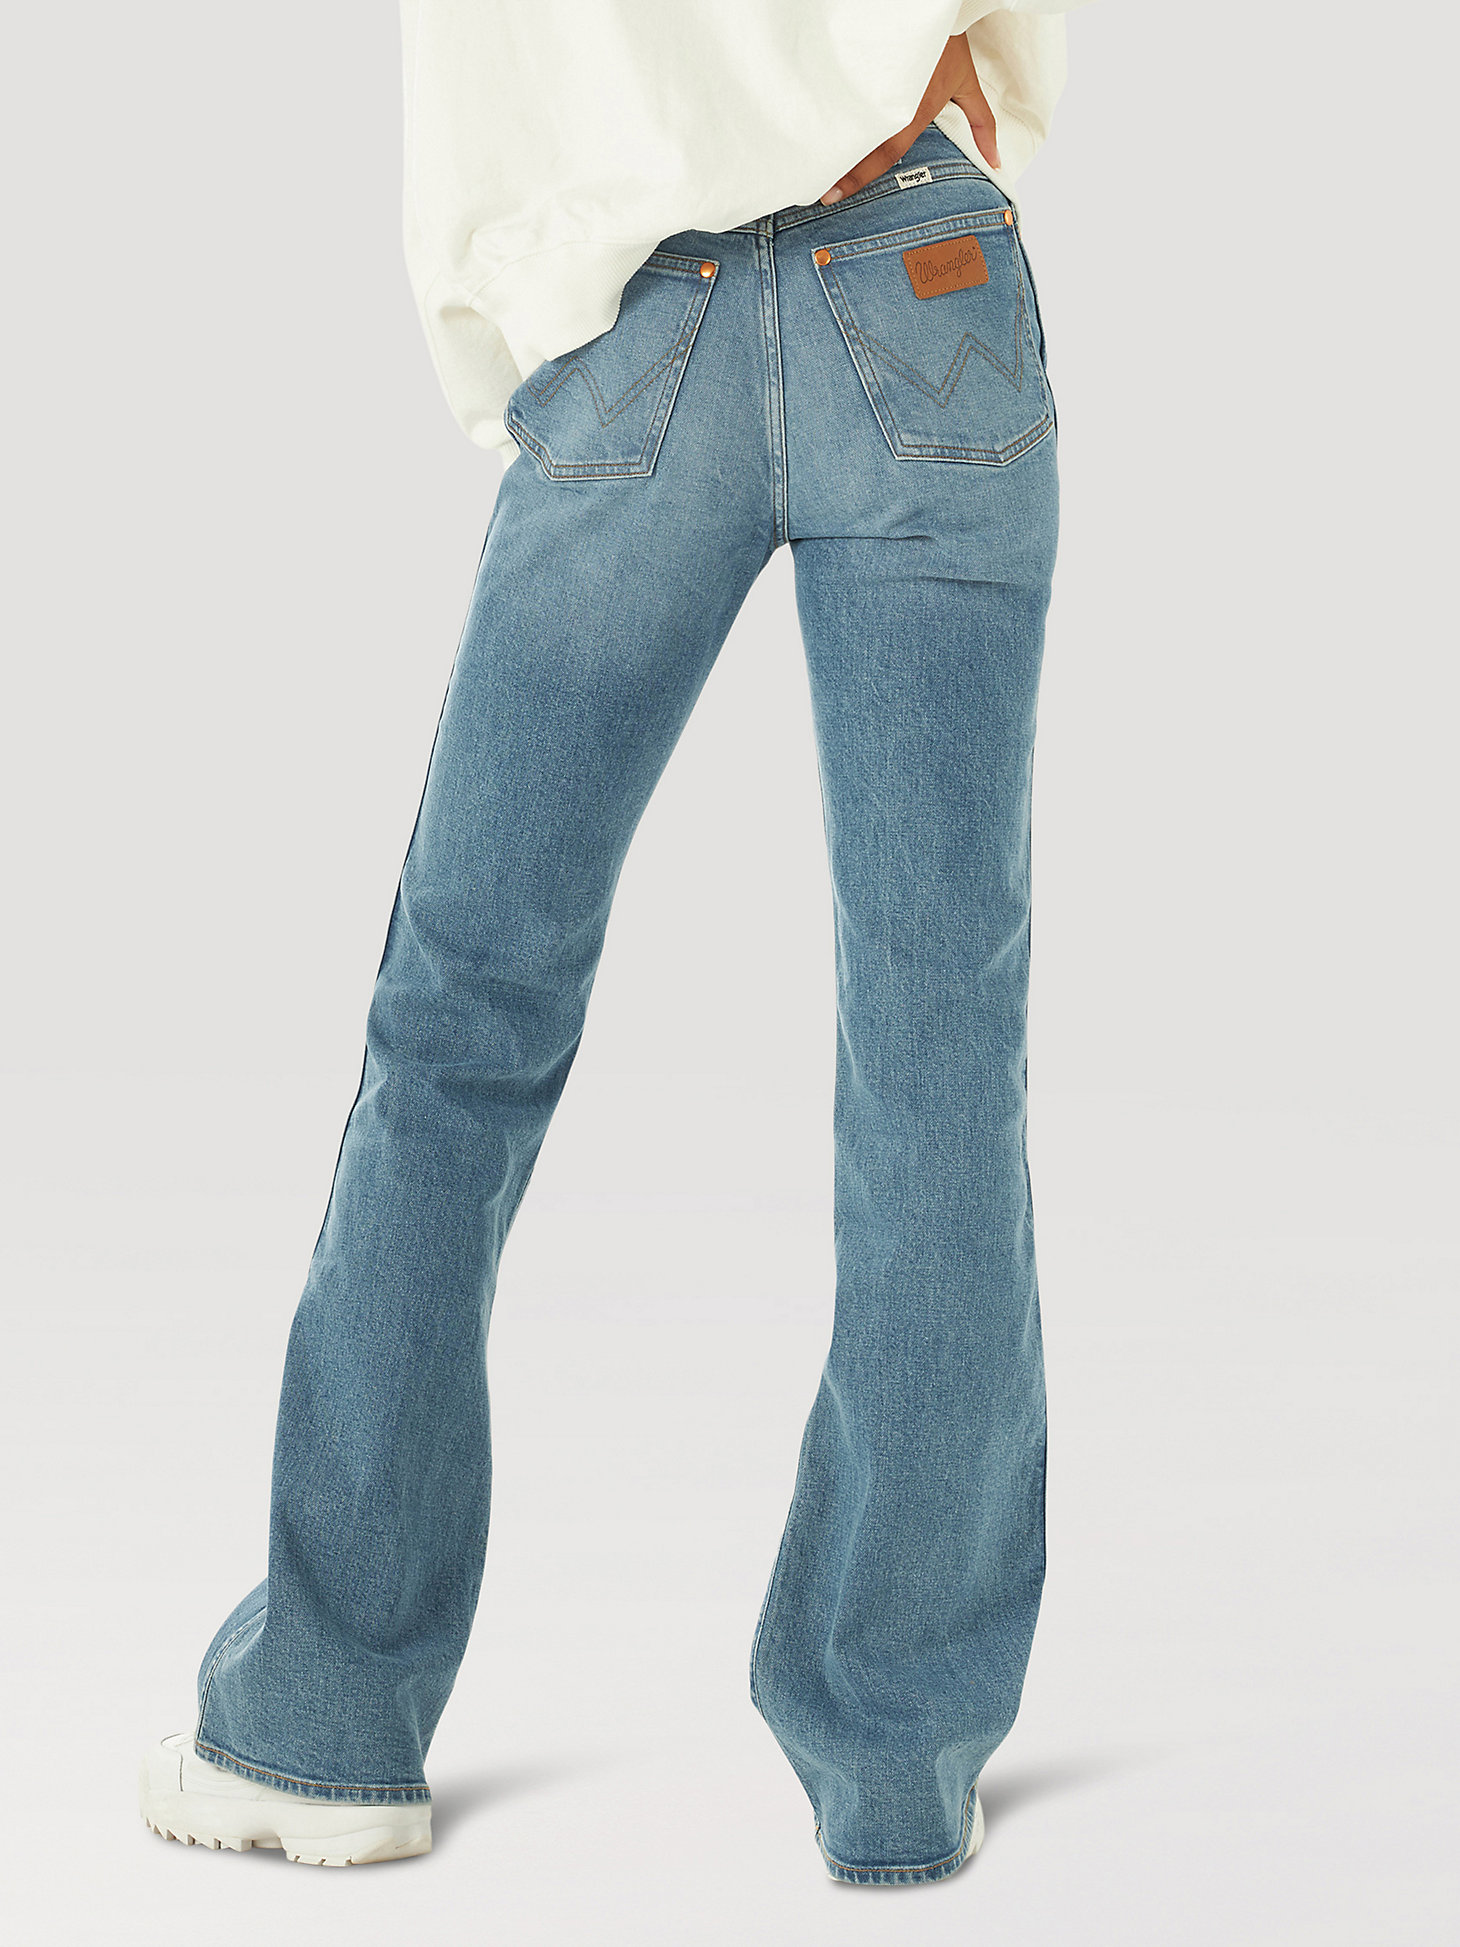 Women's Wrangler® Westward 626 High Rise Bootcut Jean in Dusty Mid alternative view 1